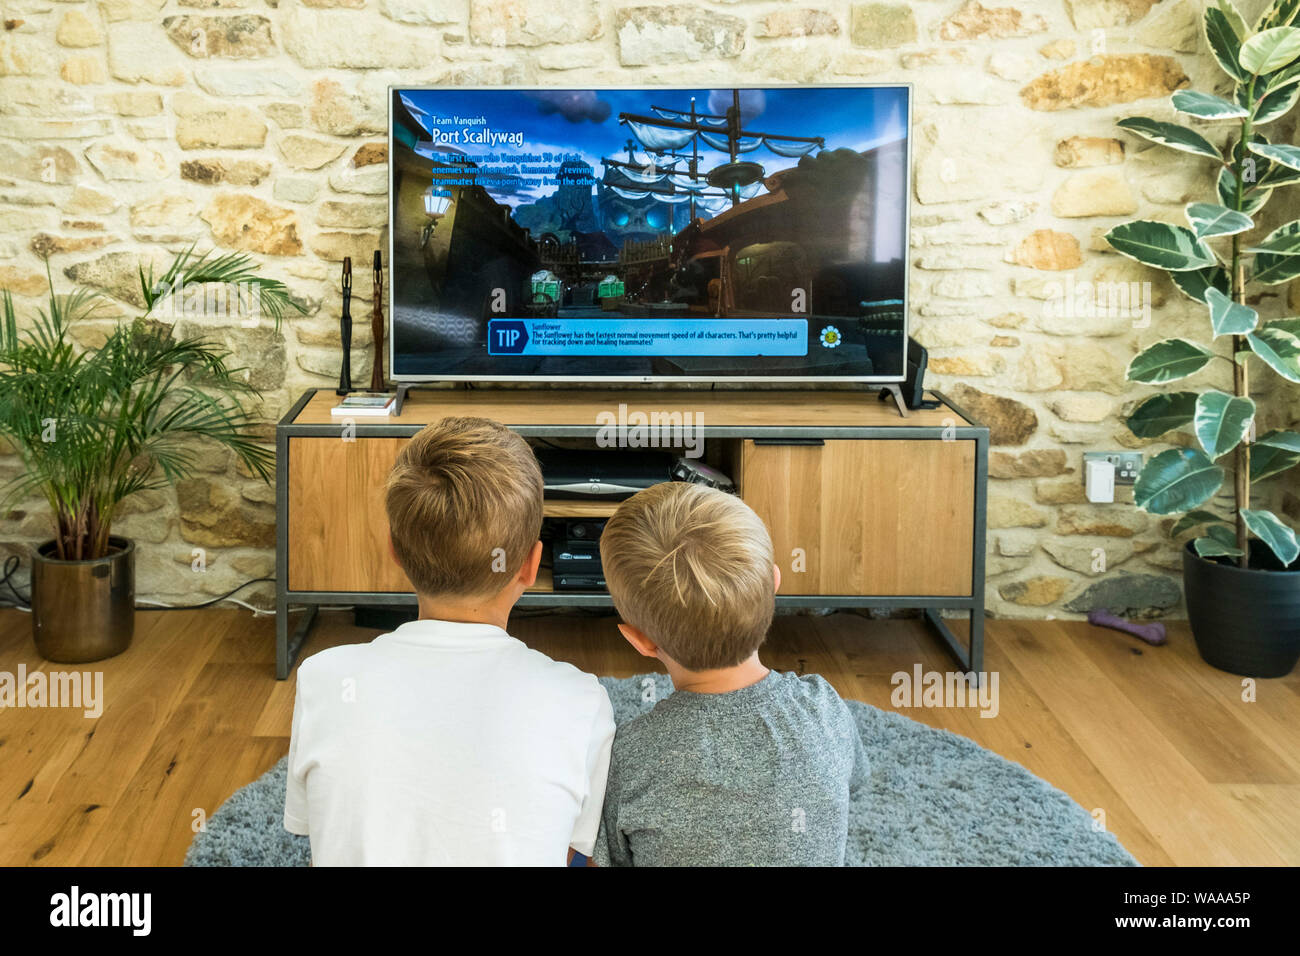 Dos jóvenes muchachos jugando un juego de video en una pantalla grande. Foto de stock